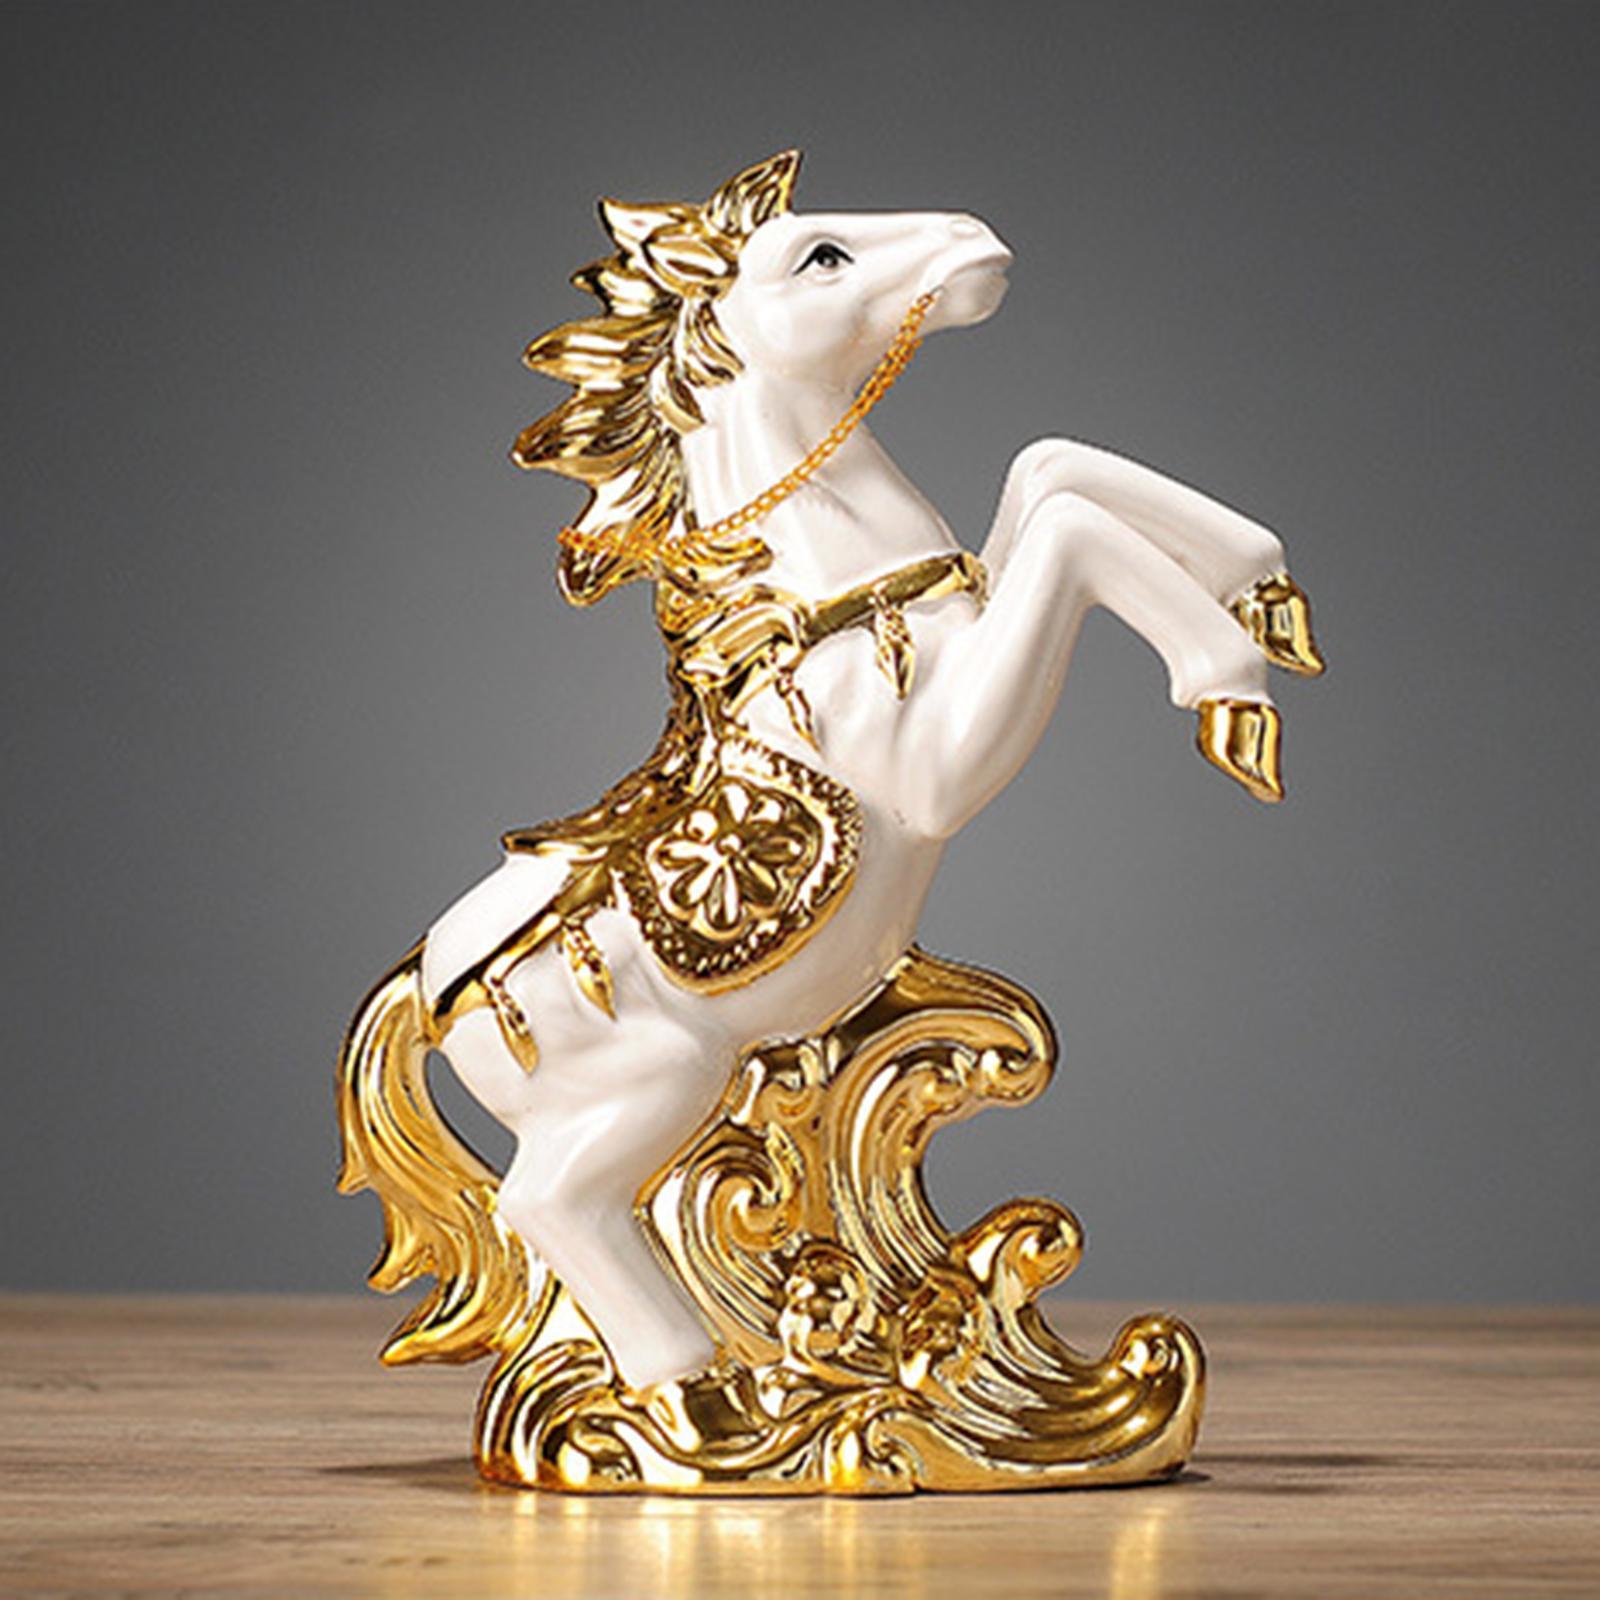 Ceramic Horse Statue Art Craft Horse Ornament for Home Shelf Decoration